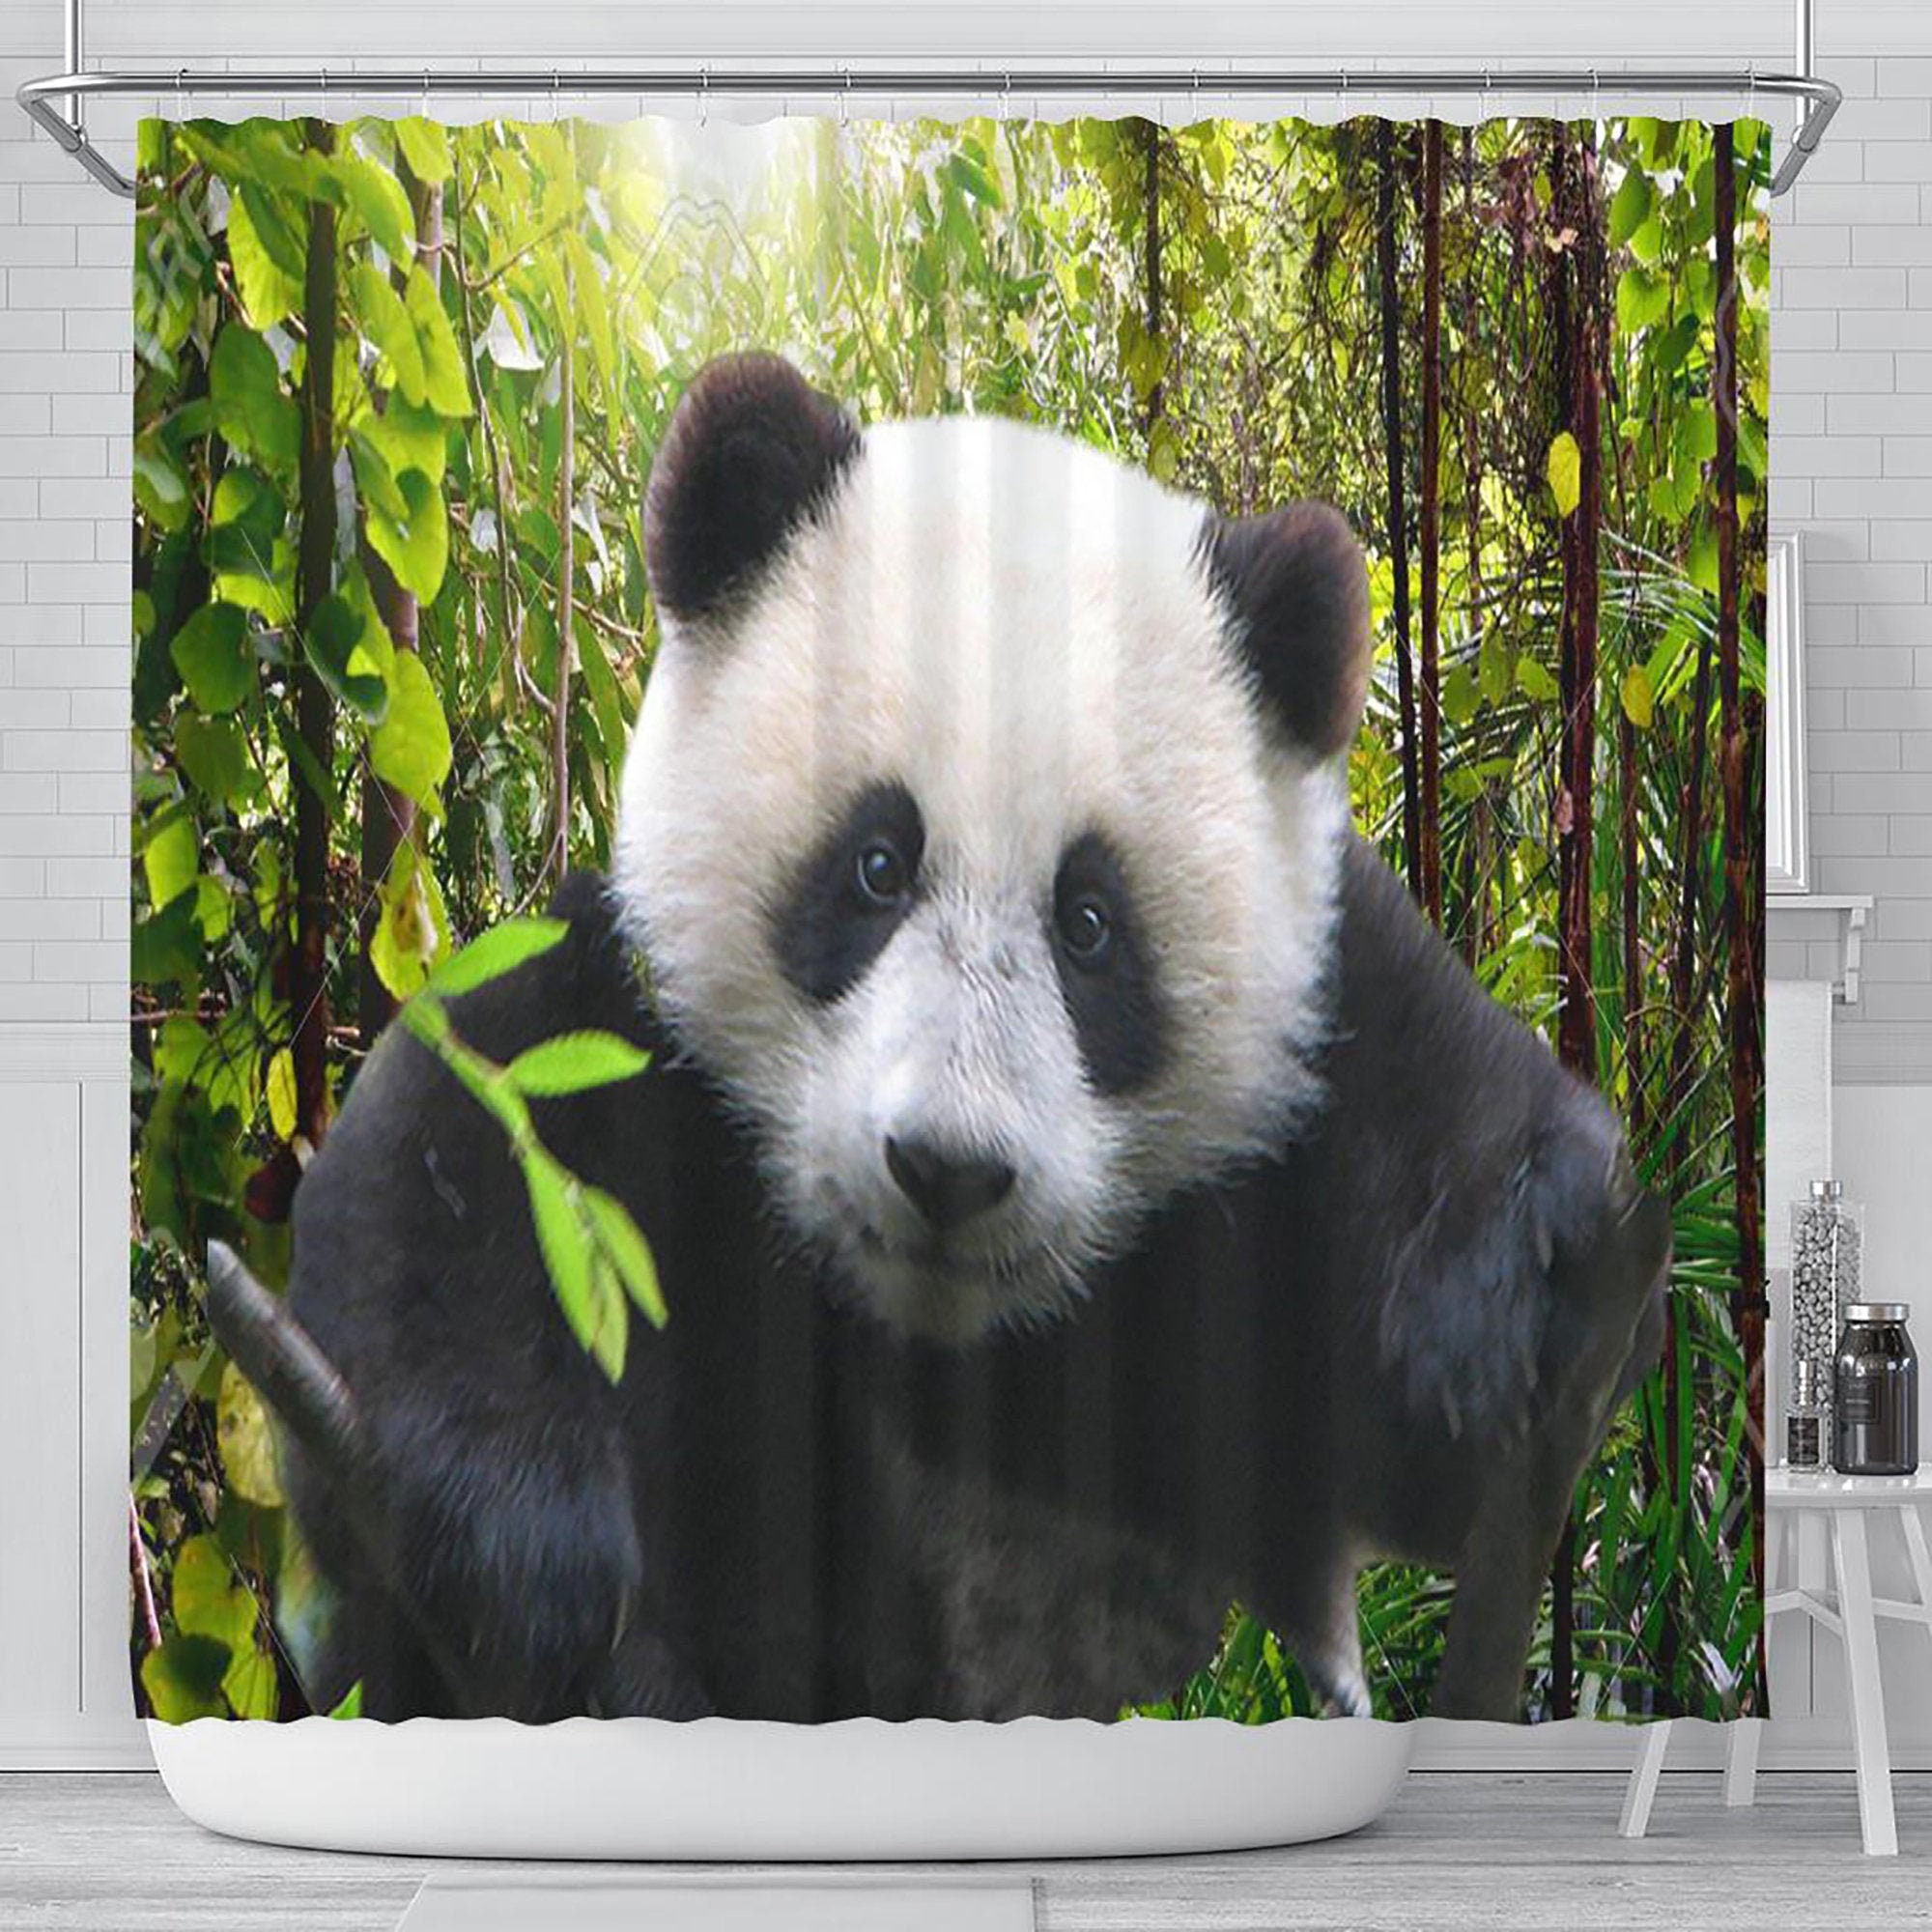 Panda Bear Shower Curtain, Bathroom Decor, Bamboo Jungle